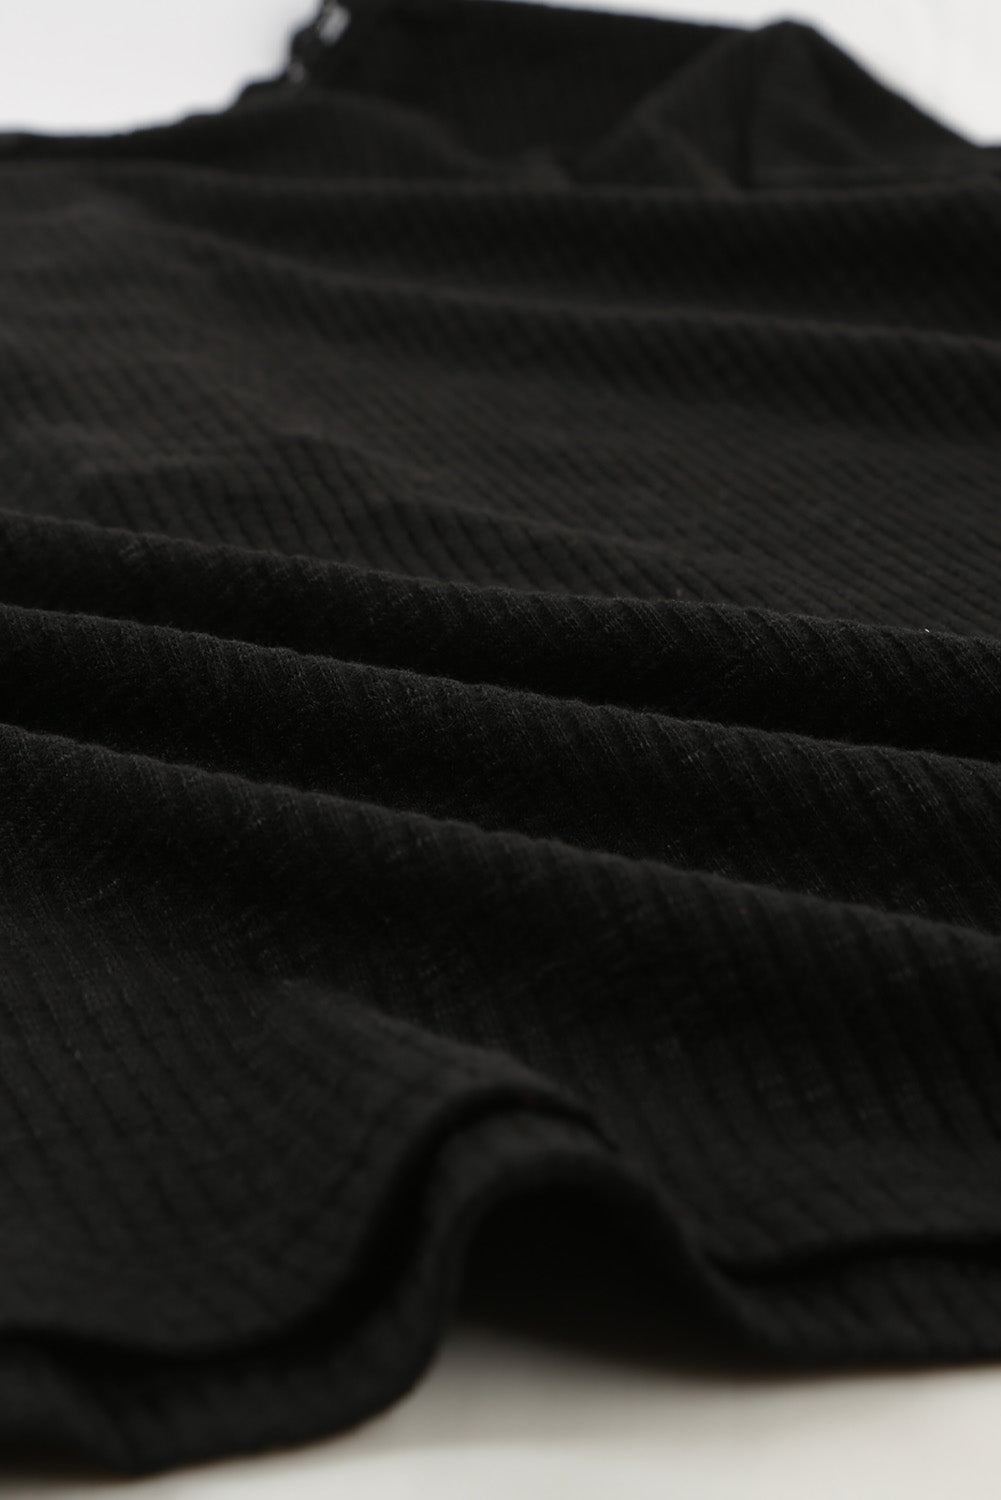 Haut noir à manches courtes en tricot côtelé boutonné